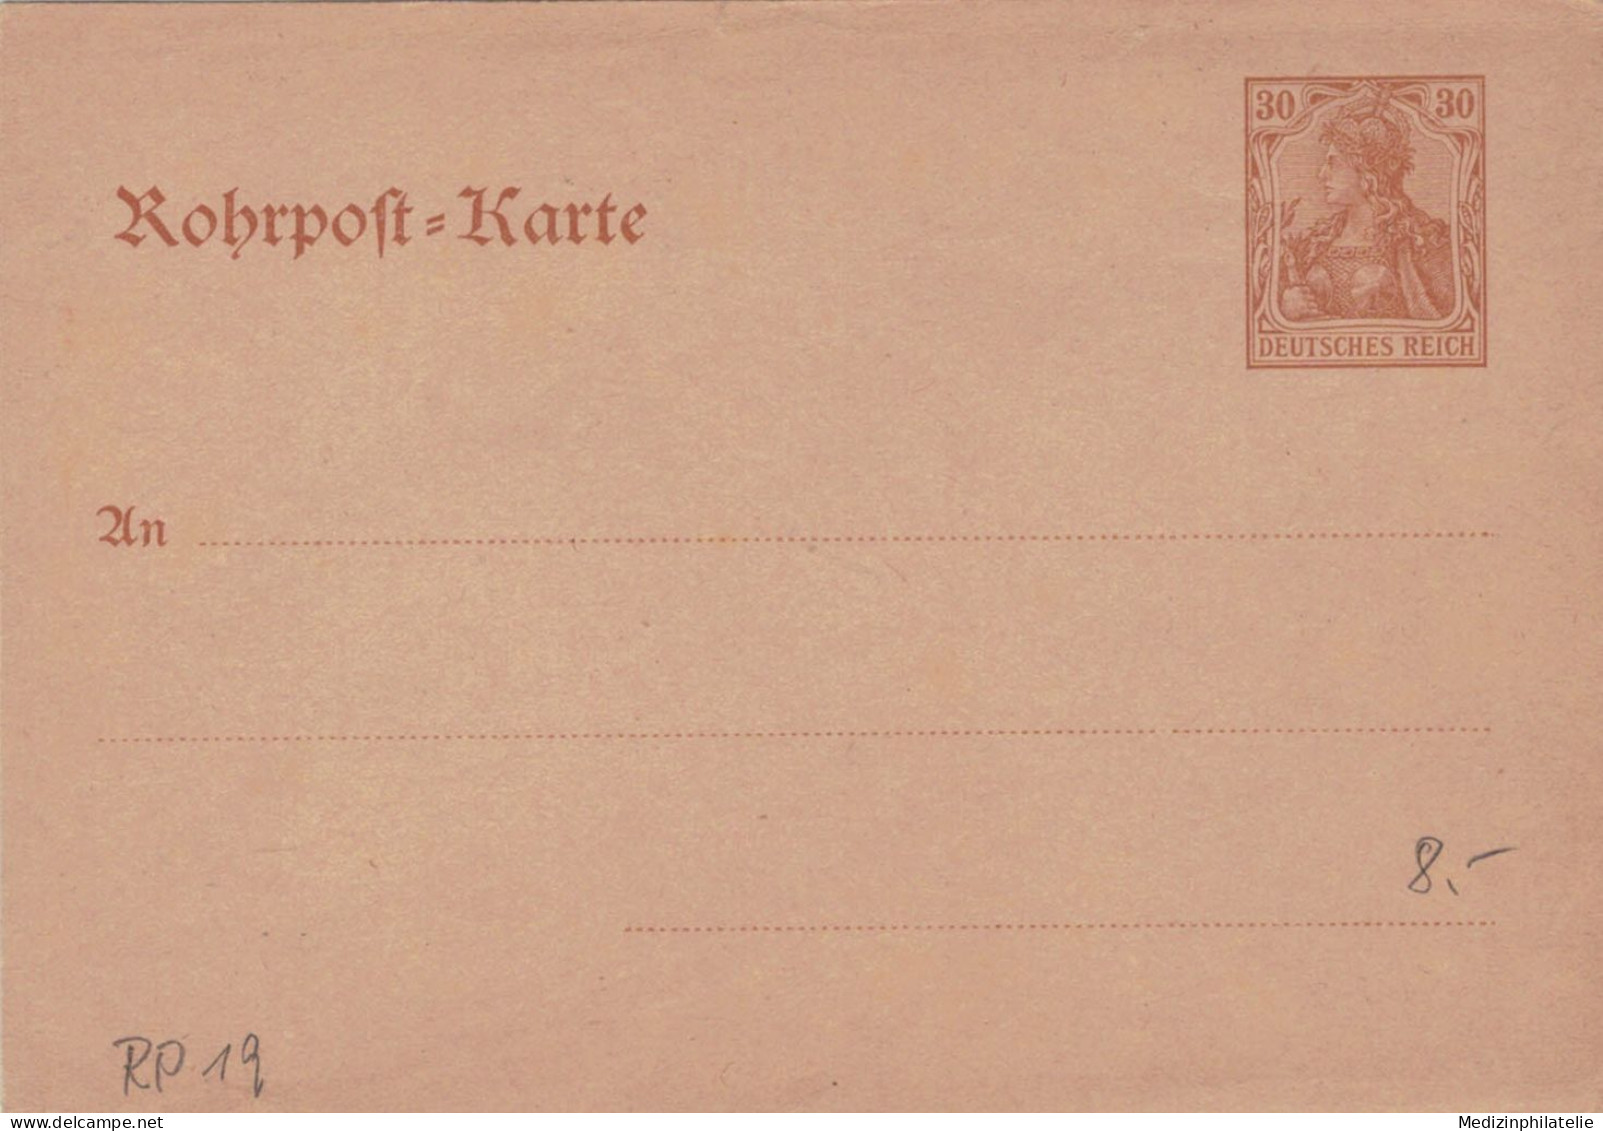 Rohrpost-Karte 30 Pf. Germania - Ungebraucht - 19 - Postcards